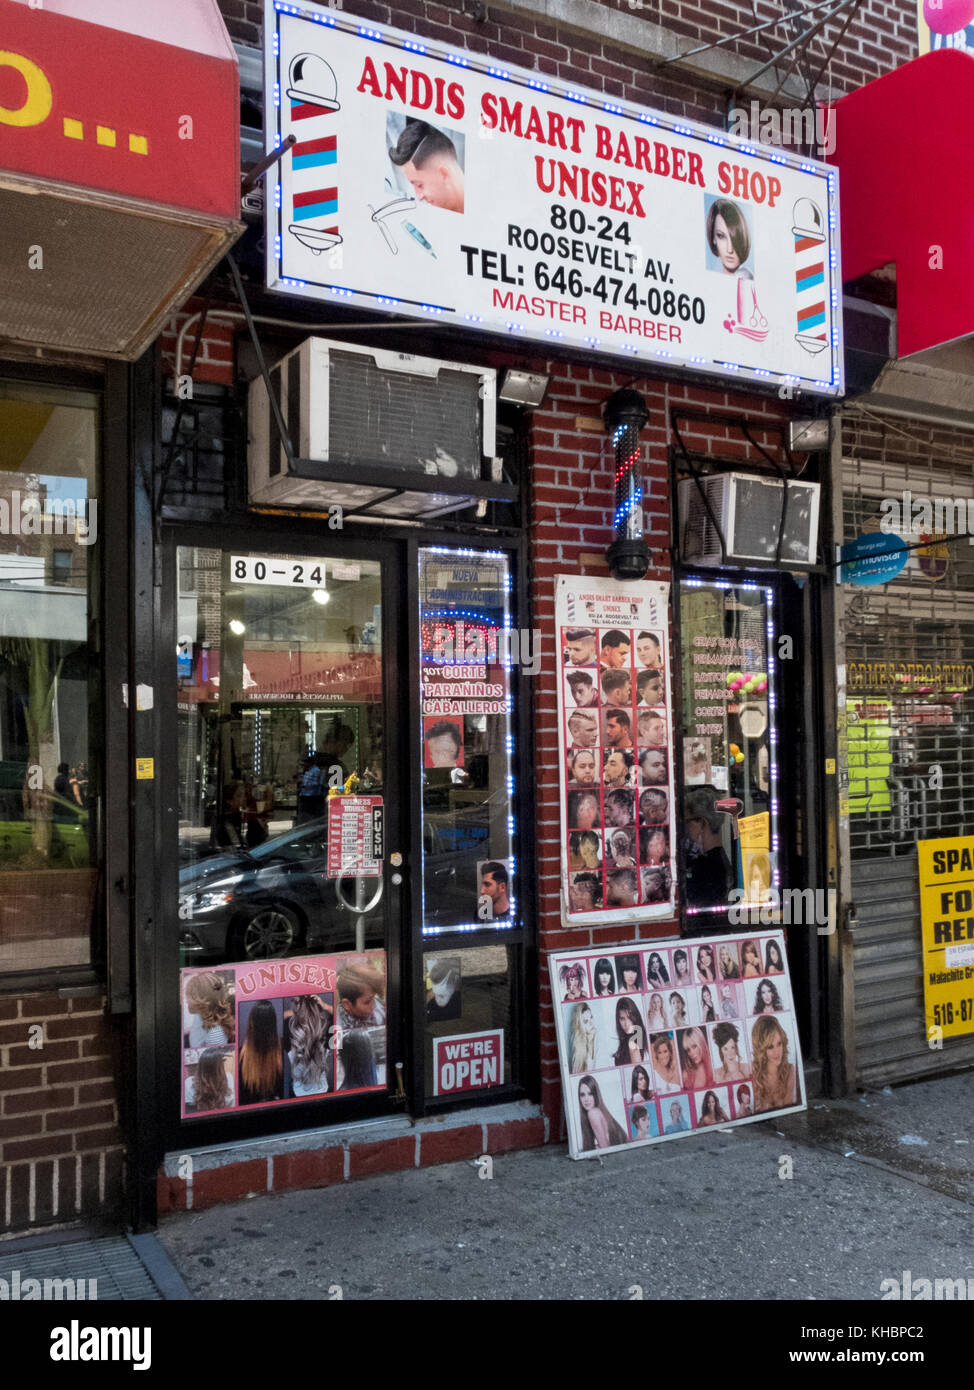 L'extérieur de Andis Barber Shop Smart sur Roosevelt Avenue sous le métro à Jackson Heights, Queens, New York. Banque D'Images